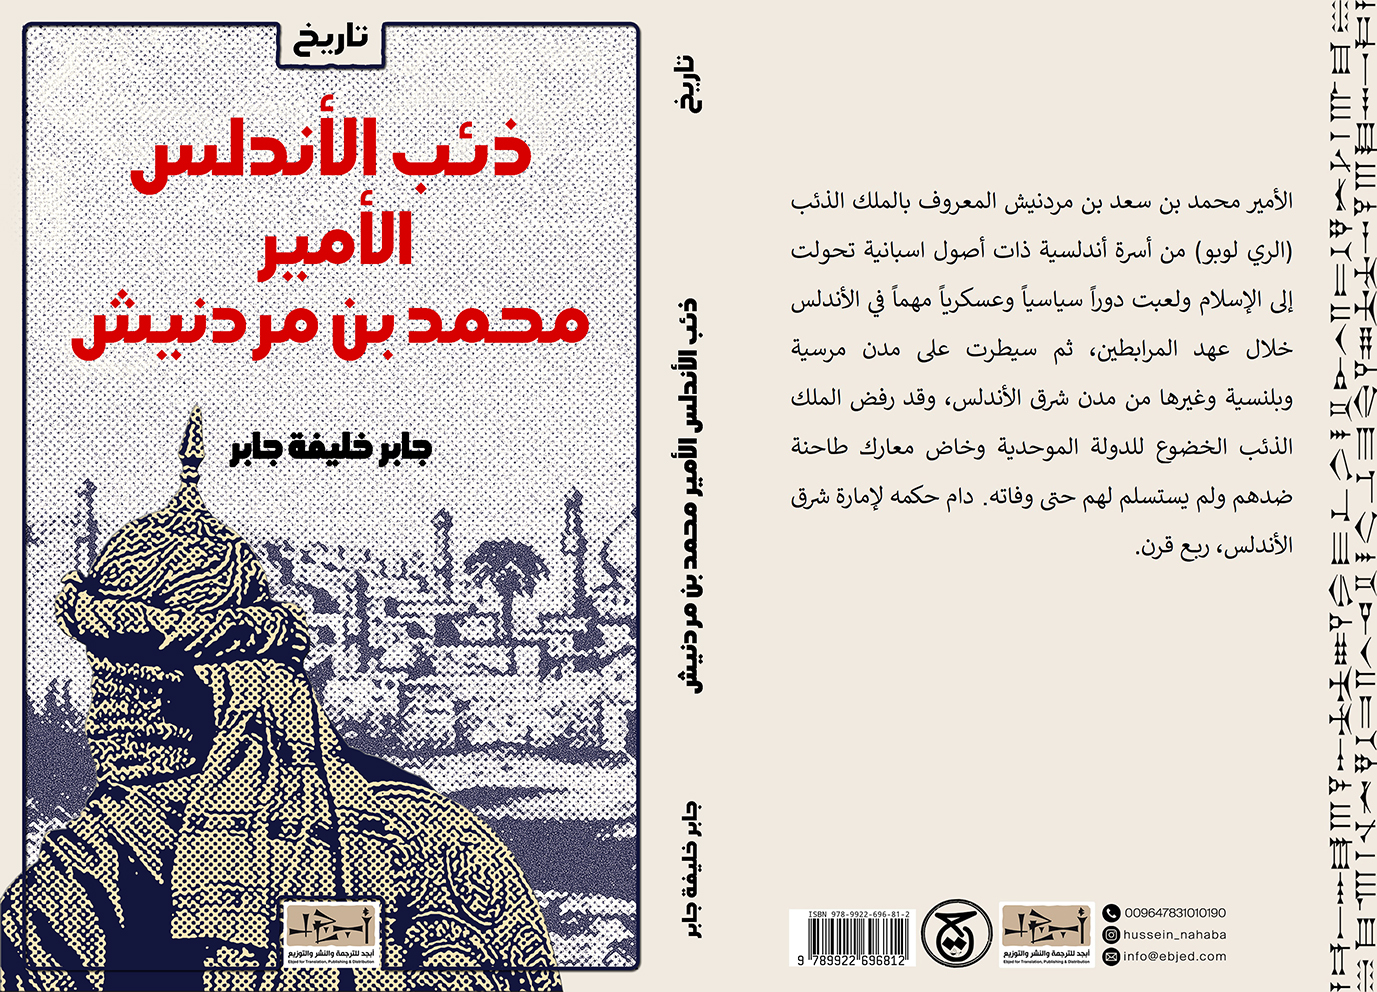  الكتاب: ذئب الأندلس الأمير محمد بن مردنيش ودوره السياسي والعسكري في الأندلس (528-636هـ/1134-1238 م) المؤلف: جابر خليفة جابر التصنيف: تاريخ